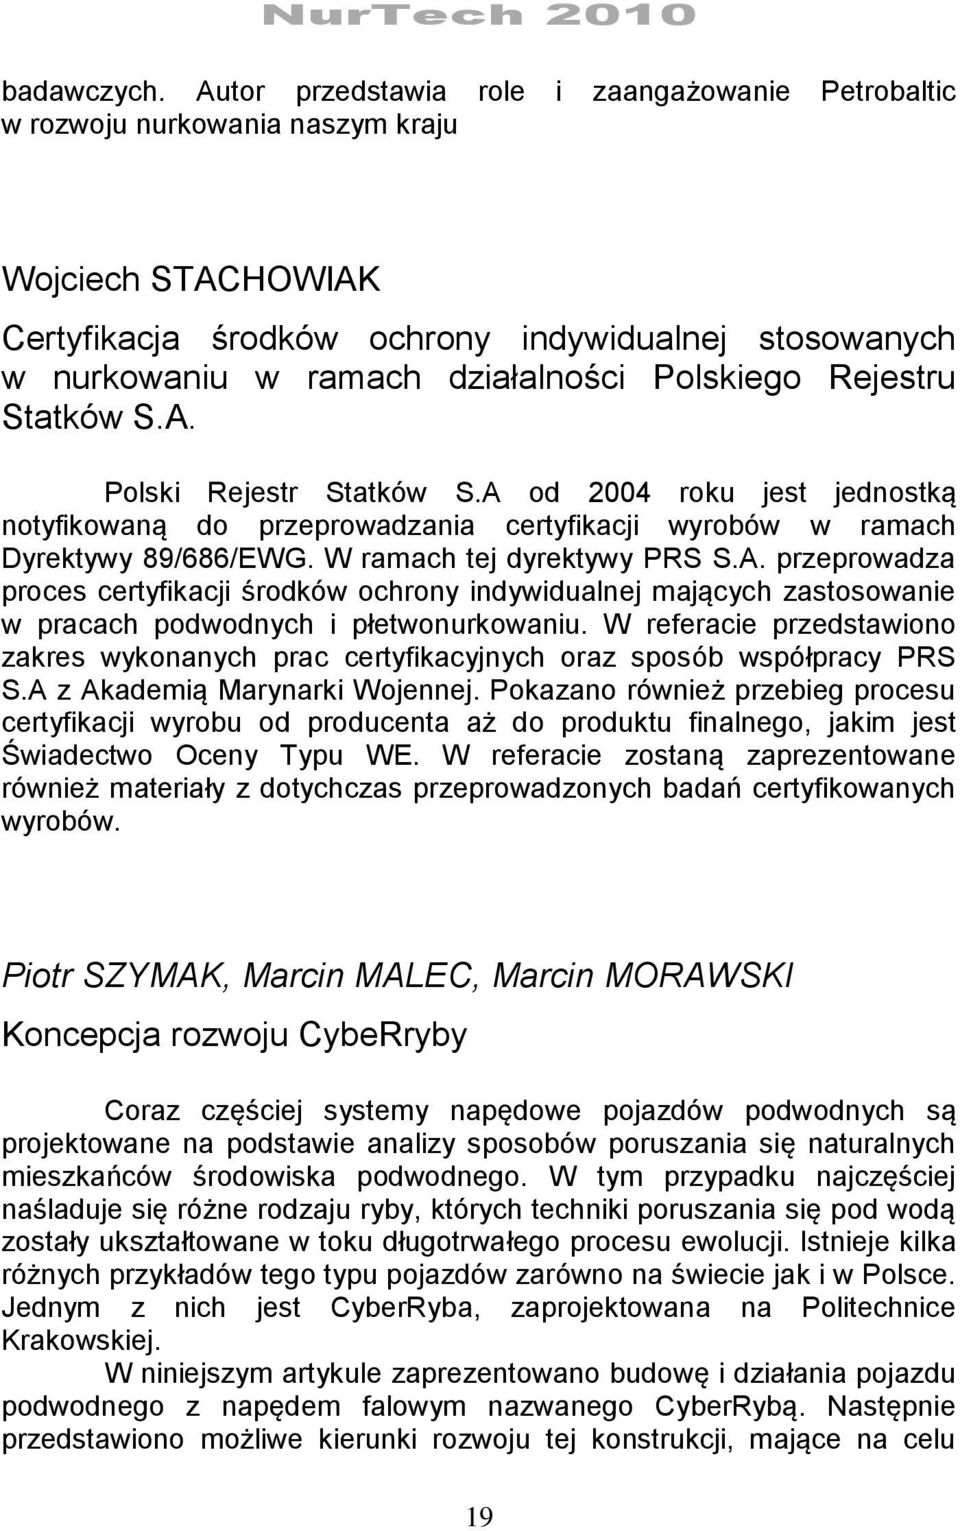 Polskiego Rejestru Statków S.A. Polski Rejestr Statków S.A od 2004 roku jest jednostką notyfikowaną do przeprowadzania certyfikacji wyrobów w ramach Dyrektywy 89/686/EWG. W ramach tej dyrektywy PRS S.